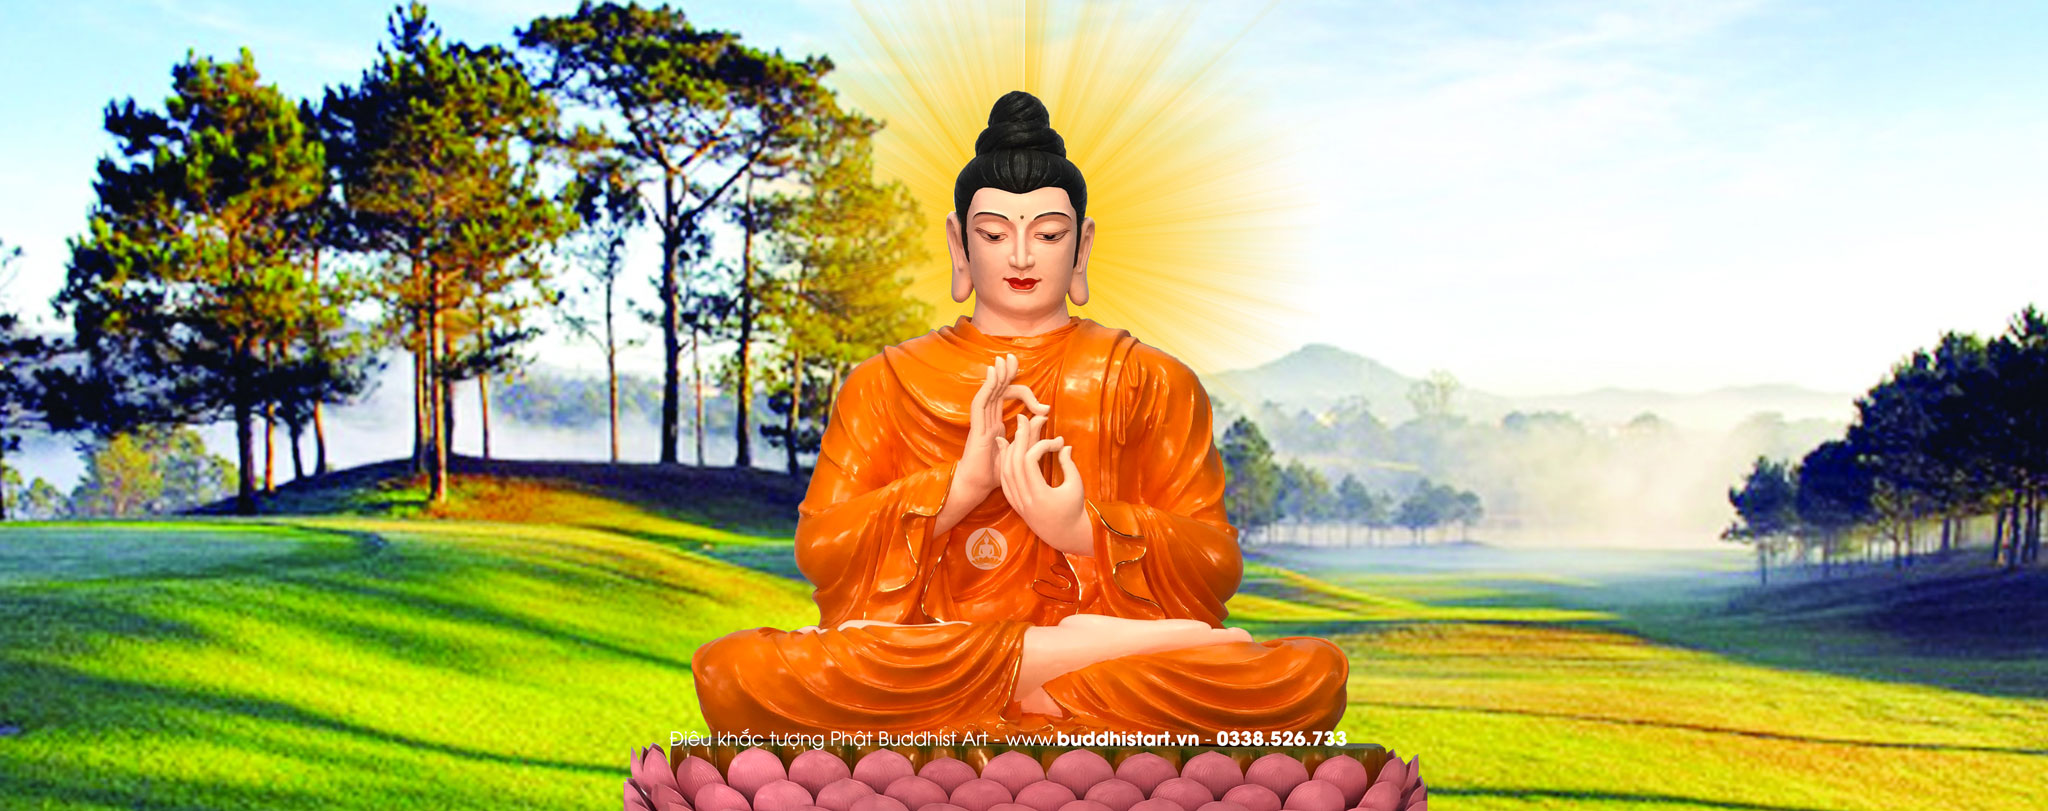 Top 100+ hình Phật, Hình ảnh Phật đẹp tuyệt vời nhất rất tốt Buddhist Art ...